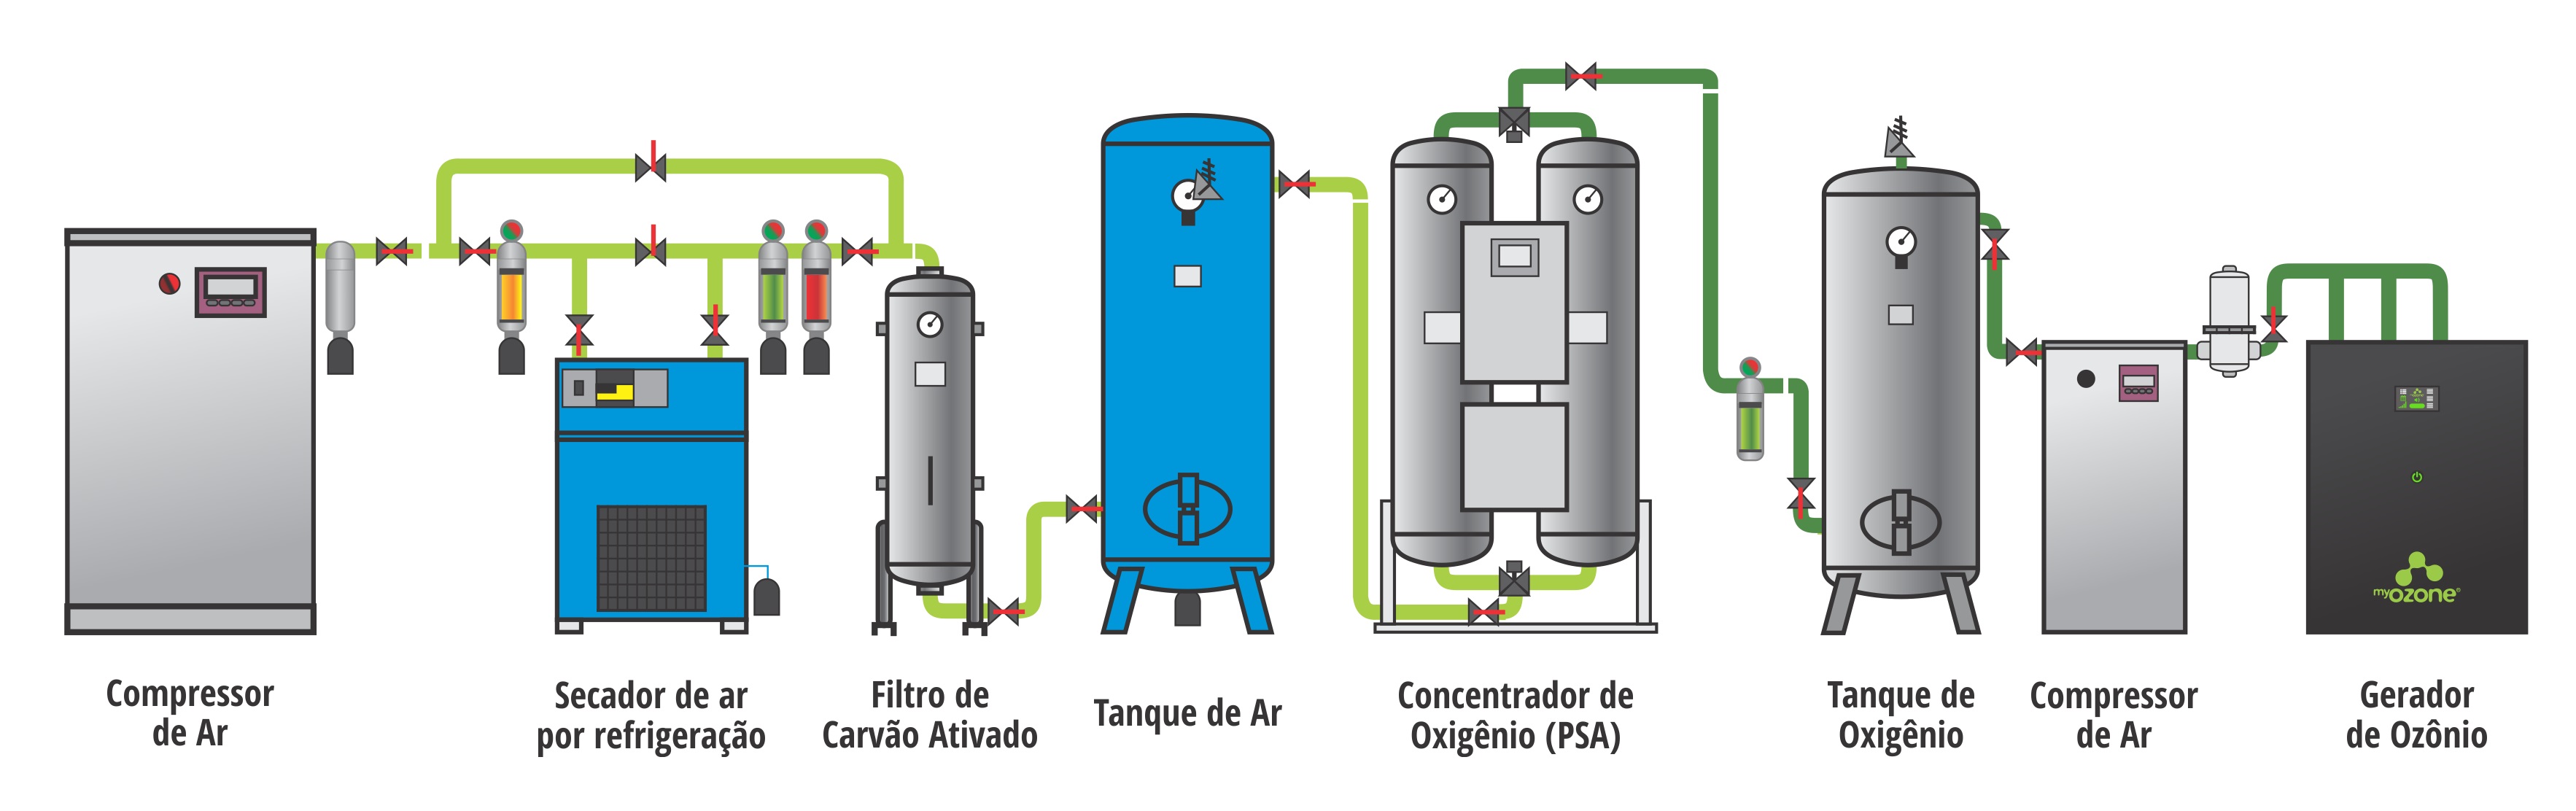 Sistema de produção de ozônio com concentrador de oxigênio industrial